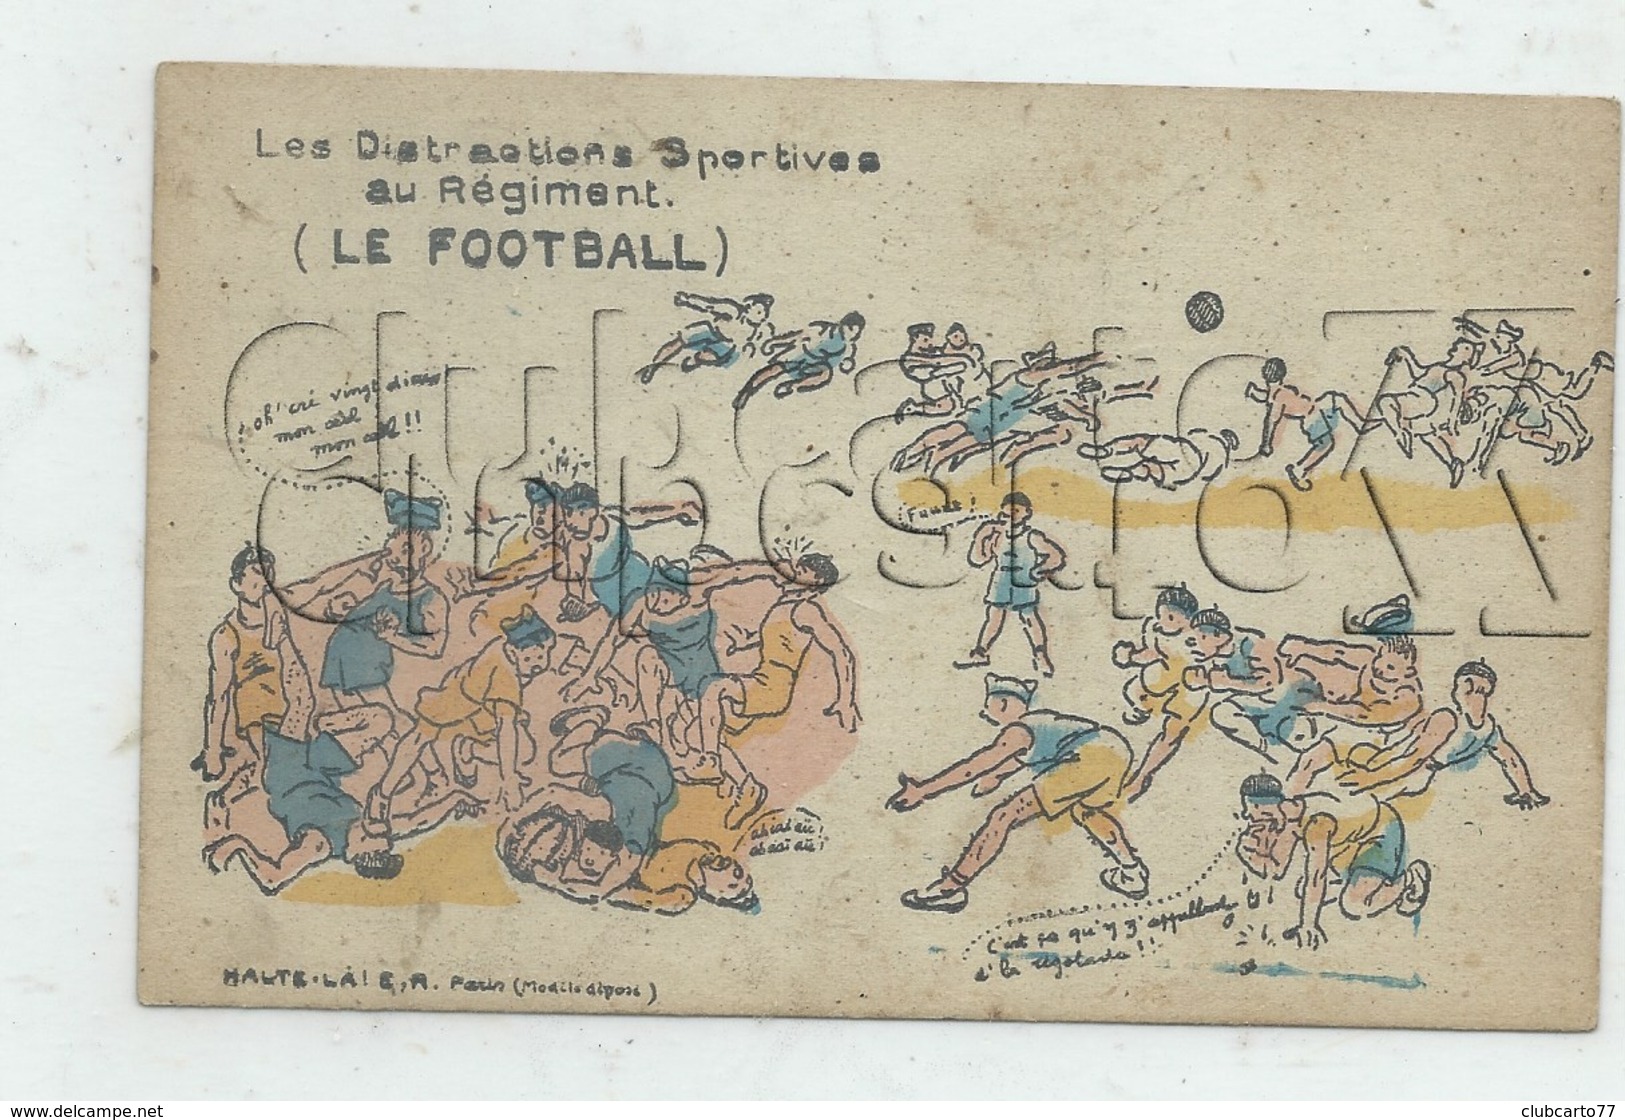 Illustrateur : Le Football Série Les Distractions Sportives Au Régiment En 1927 (animé) PF. - 1900-1949